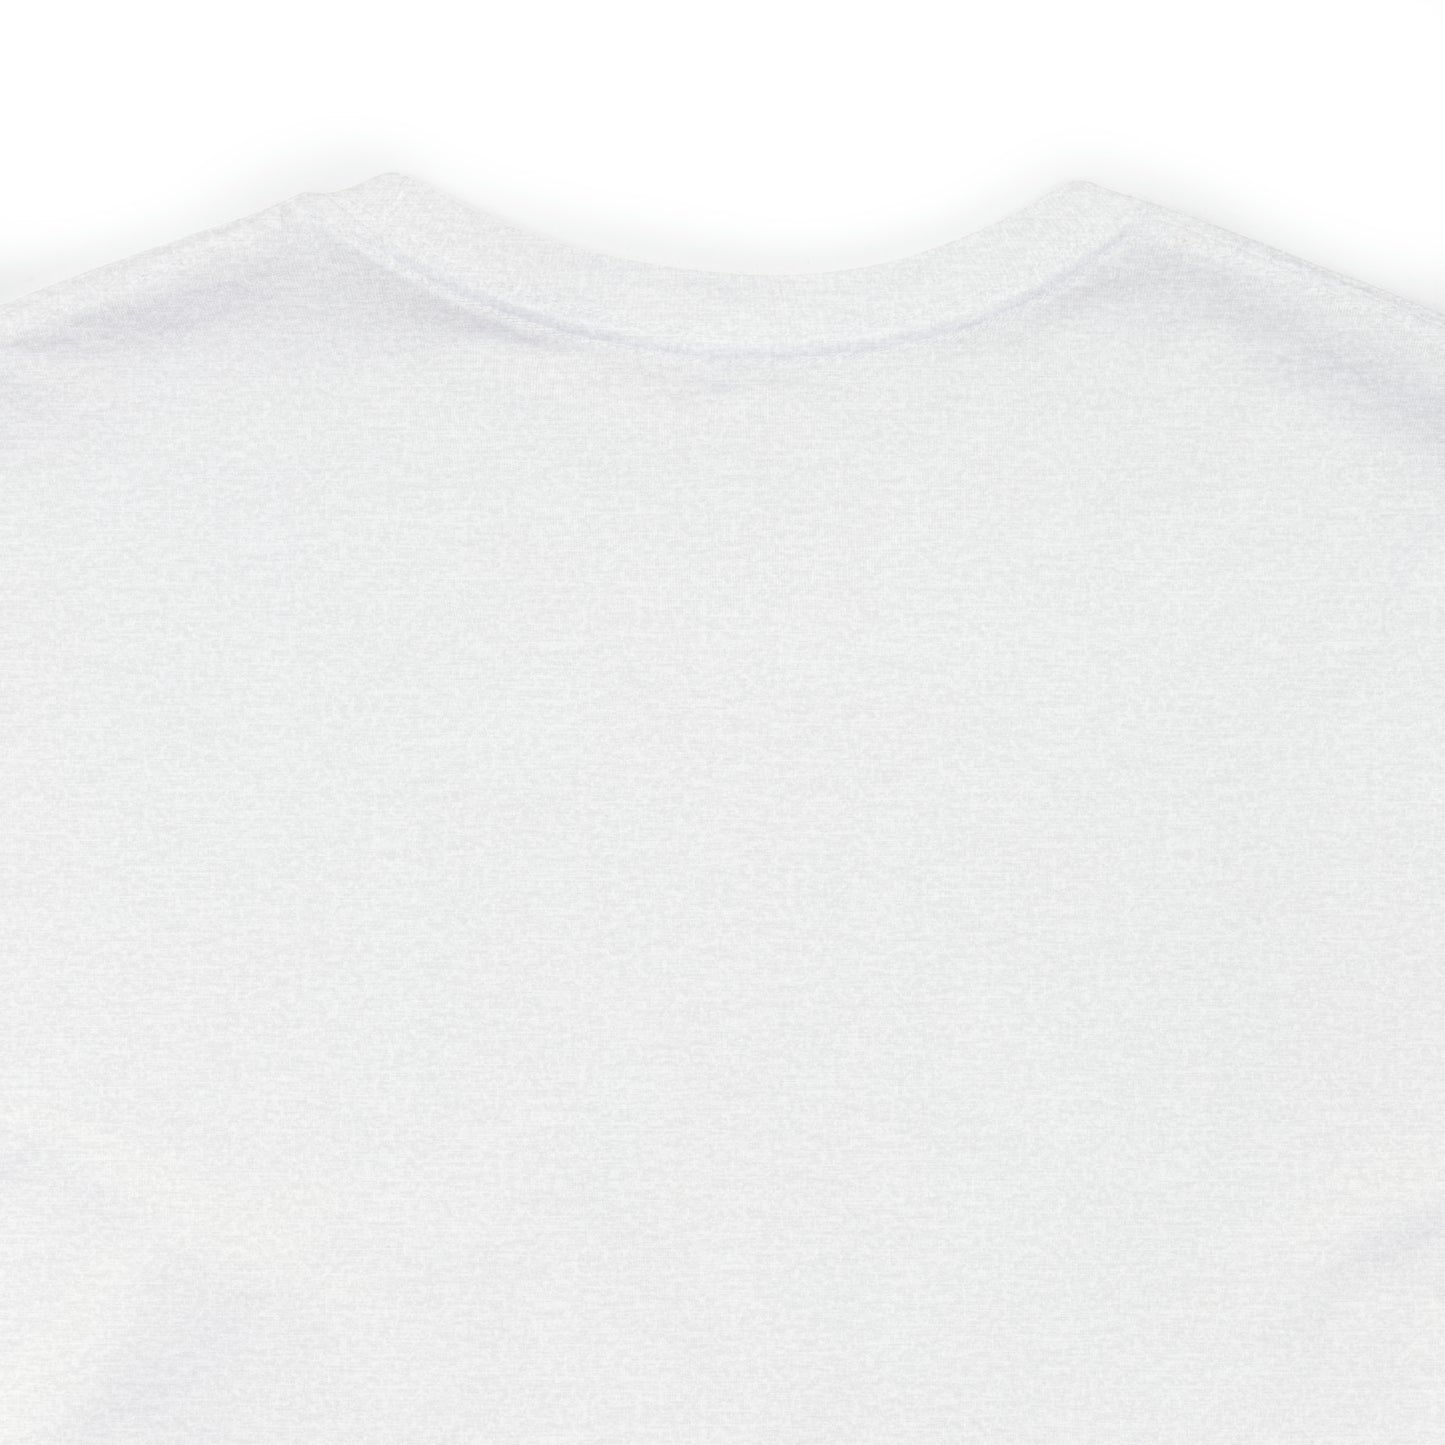 Adams, Mass Pickleball Short Sleeve T-Shirt